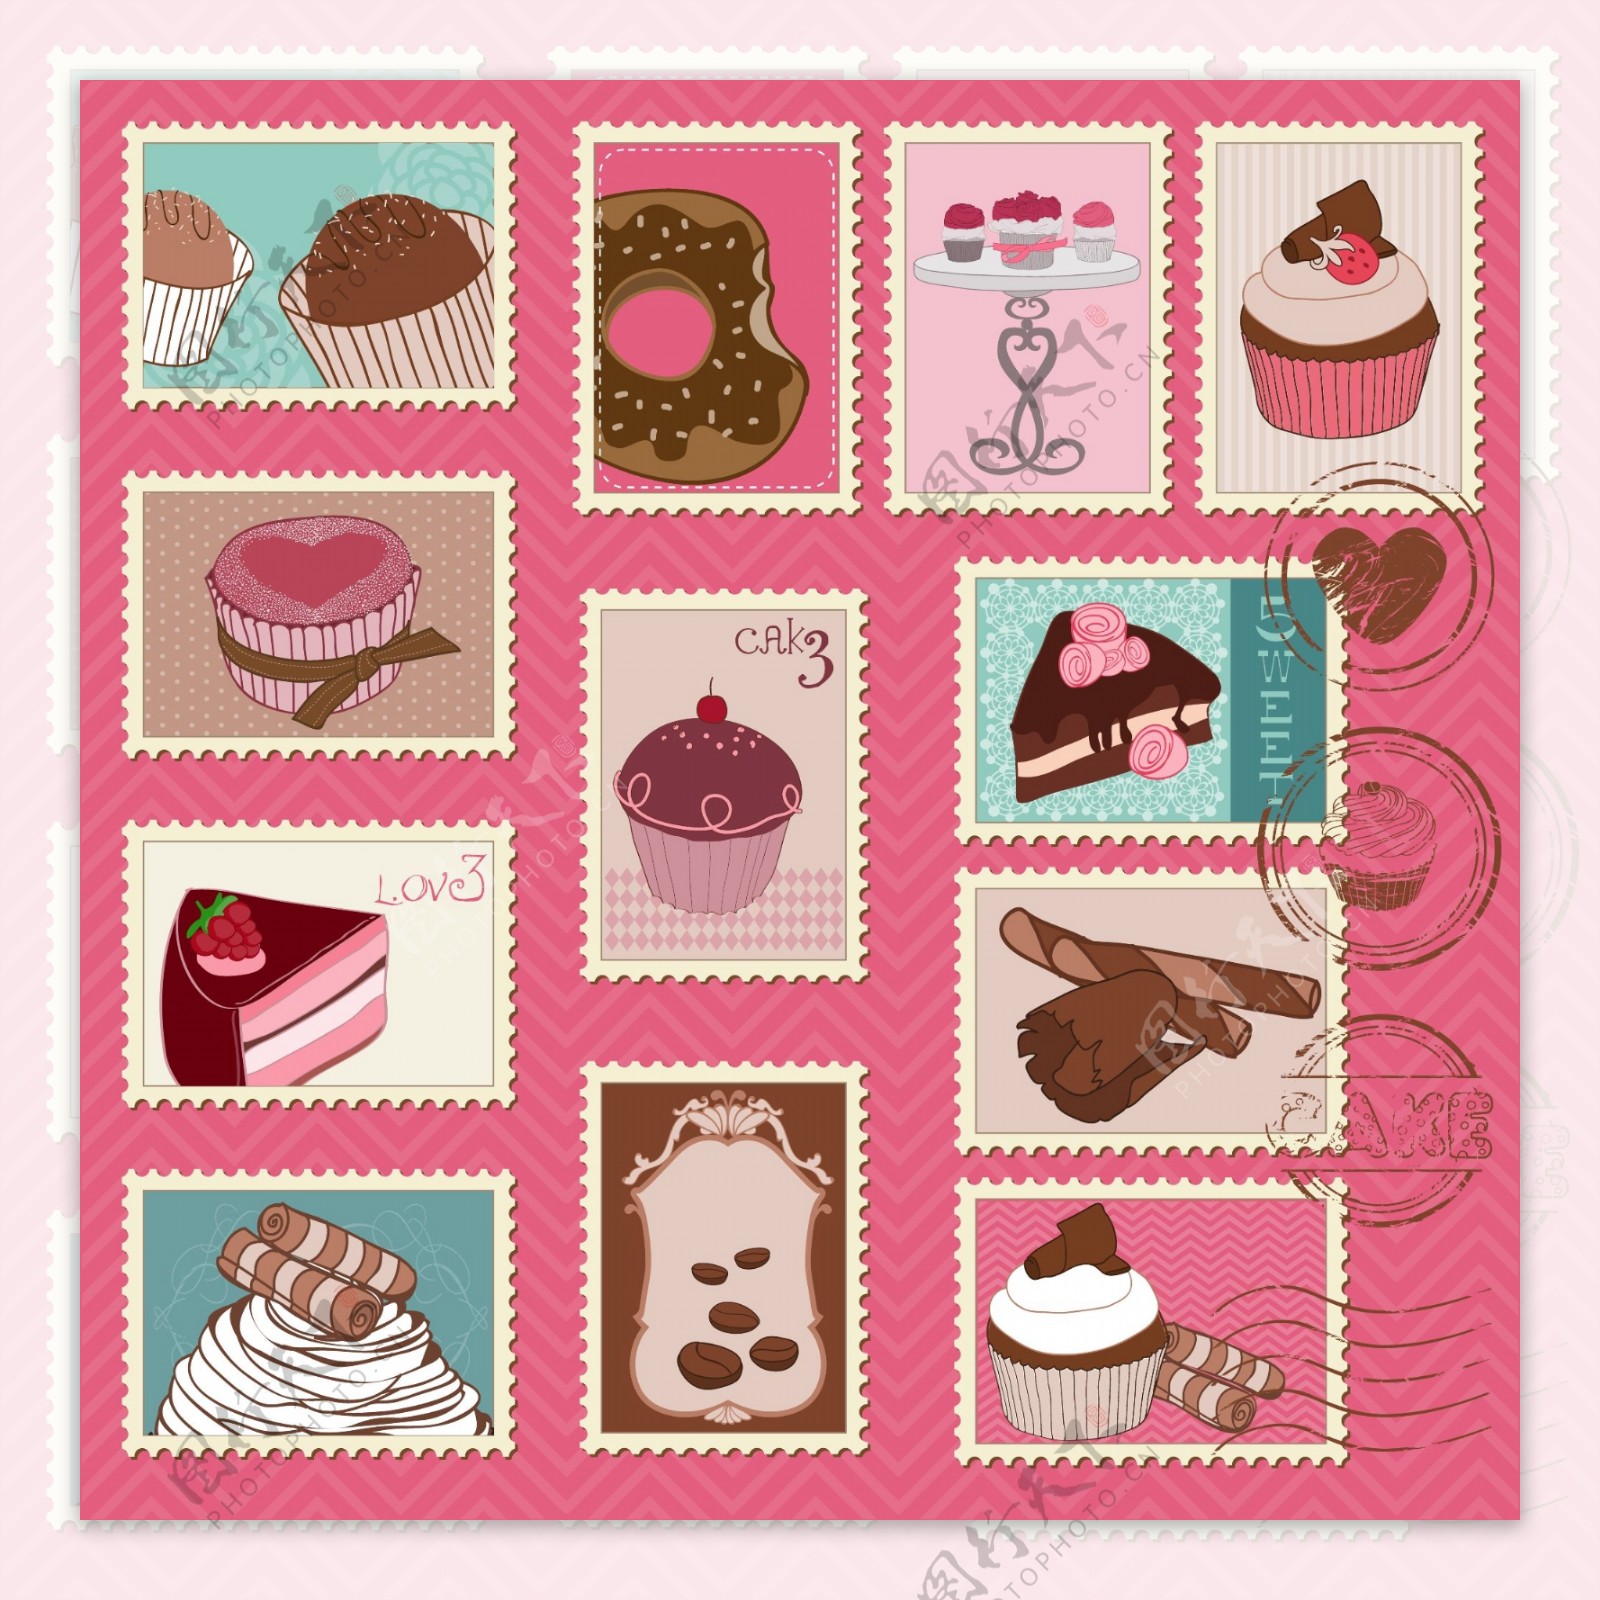 美味甜品糕点矢量收集的邮票